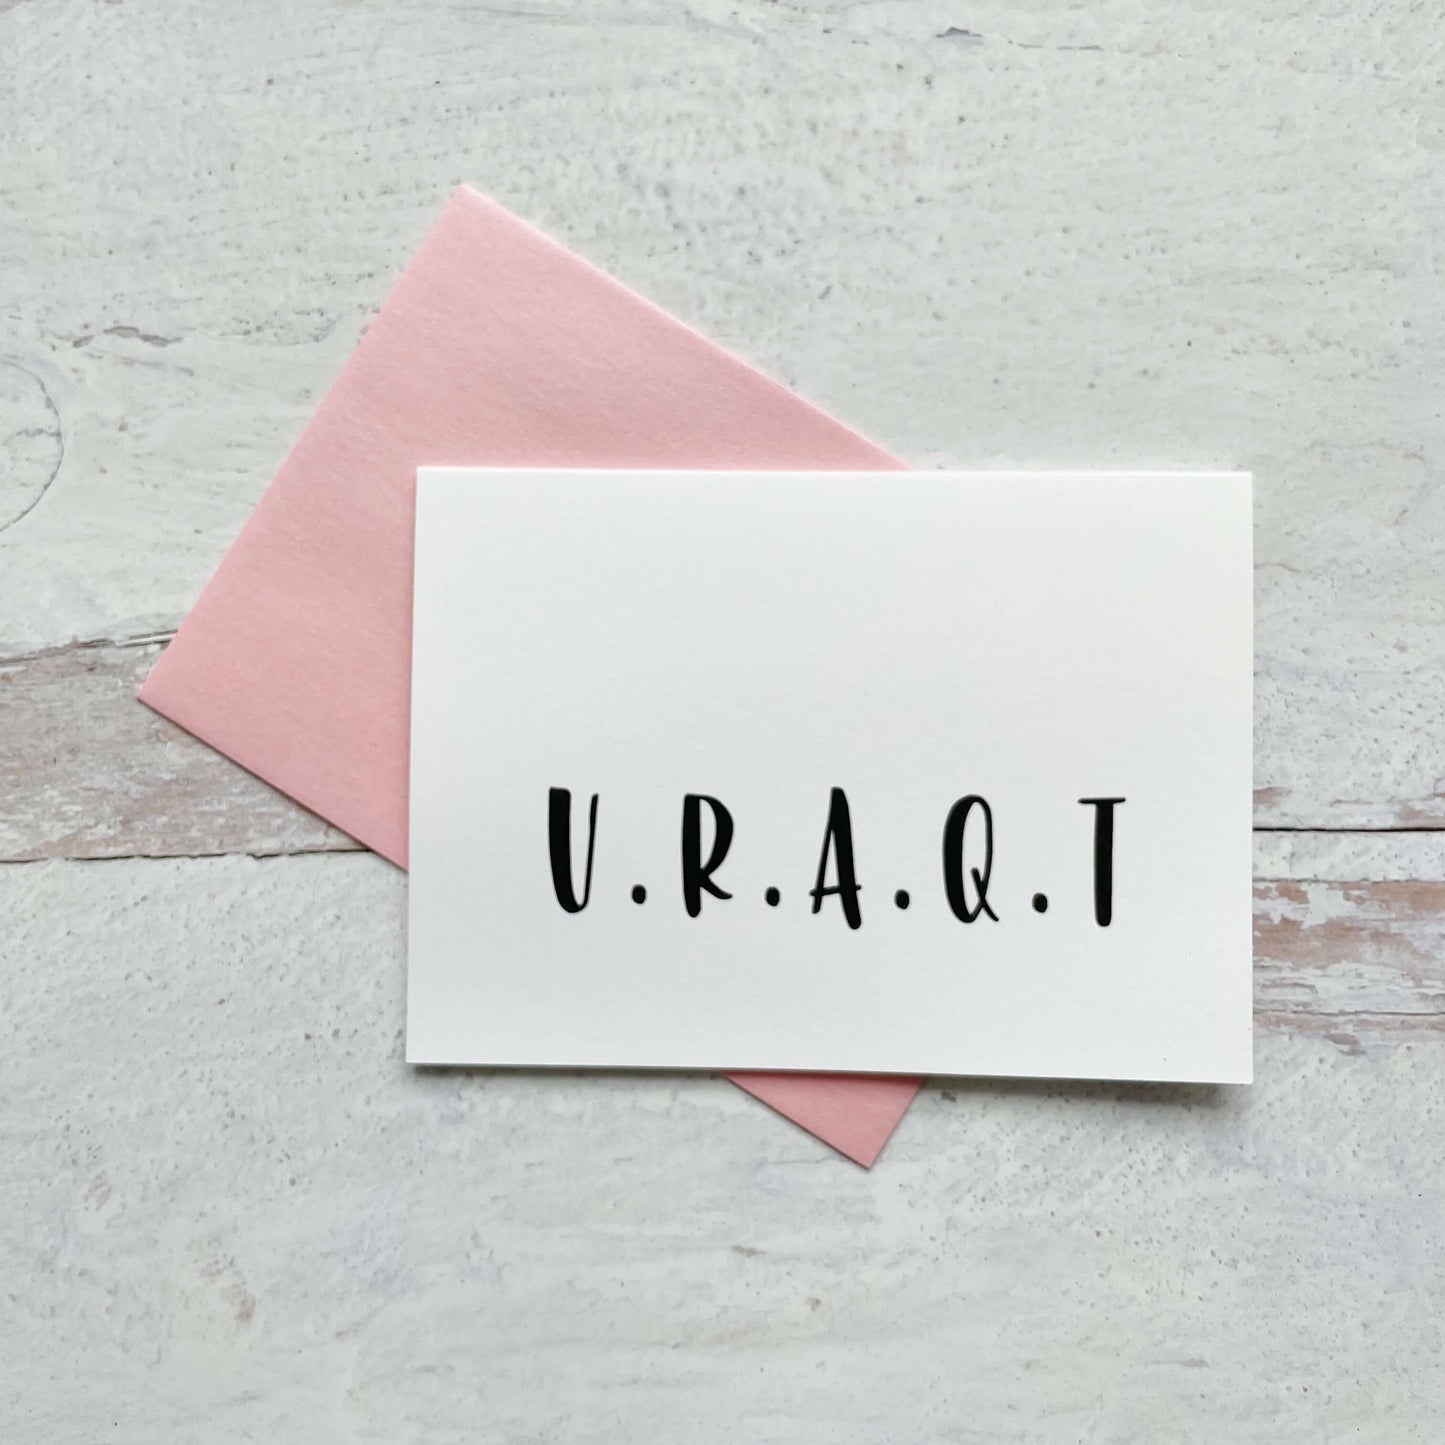 U.R.A.Q.T. (You Are a Cutie)